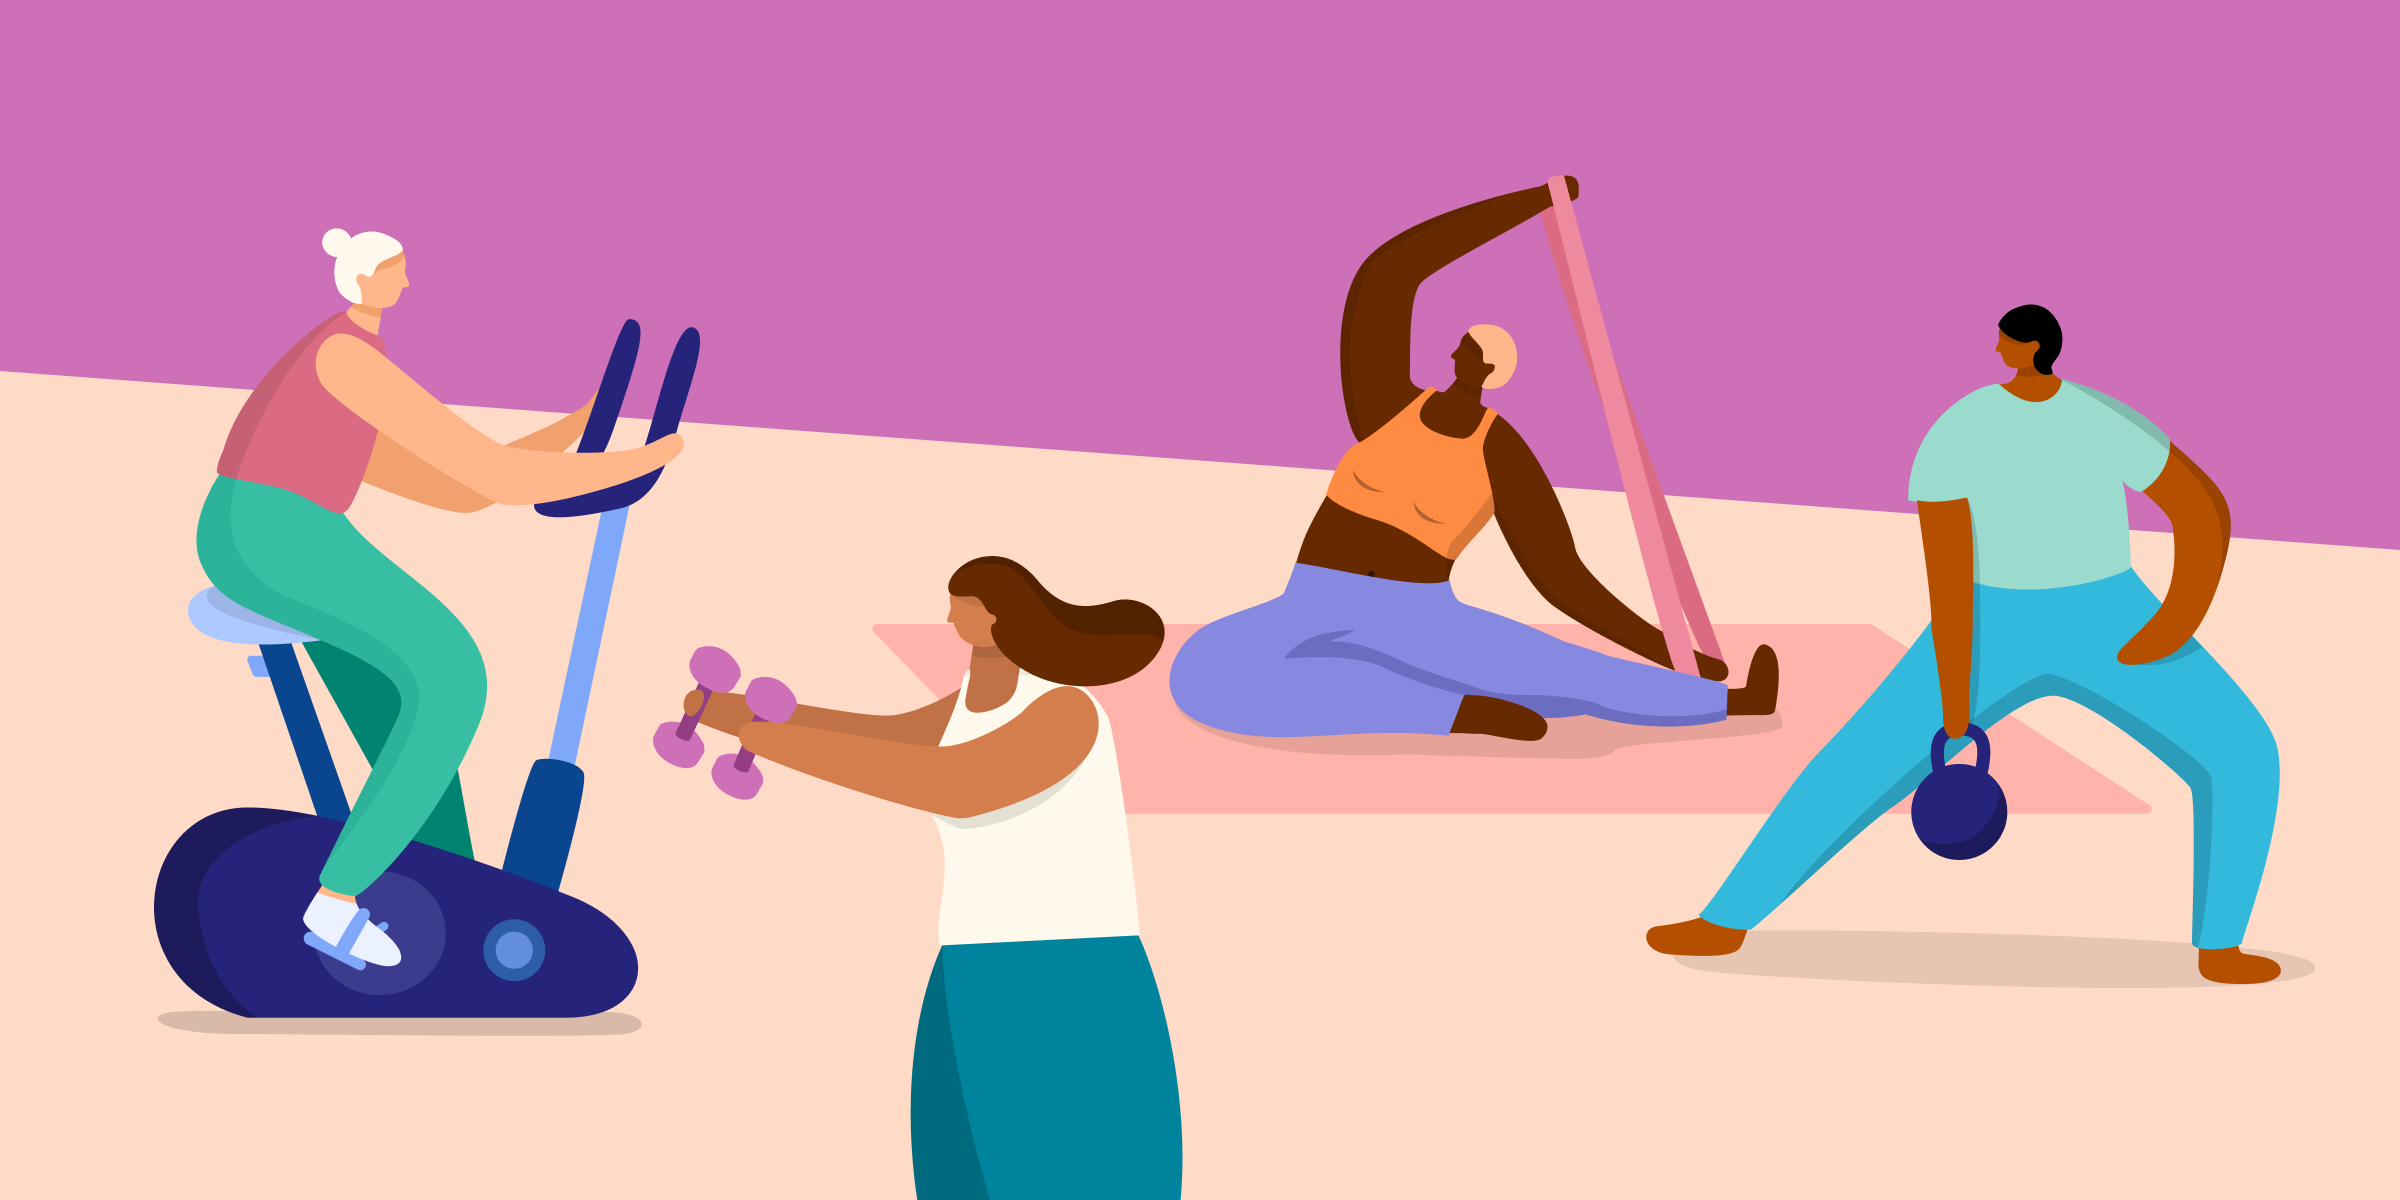 Illustration, die drei sportliche Aktivitäten zeigt. Von links nach rechts: Gewichtheben, Laufbahn, Tennis.